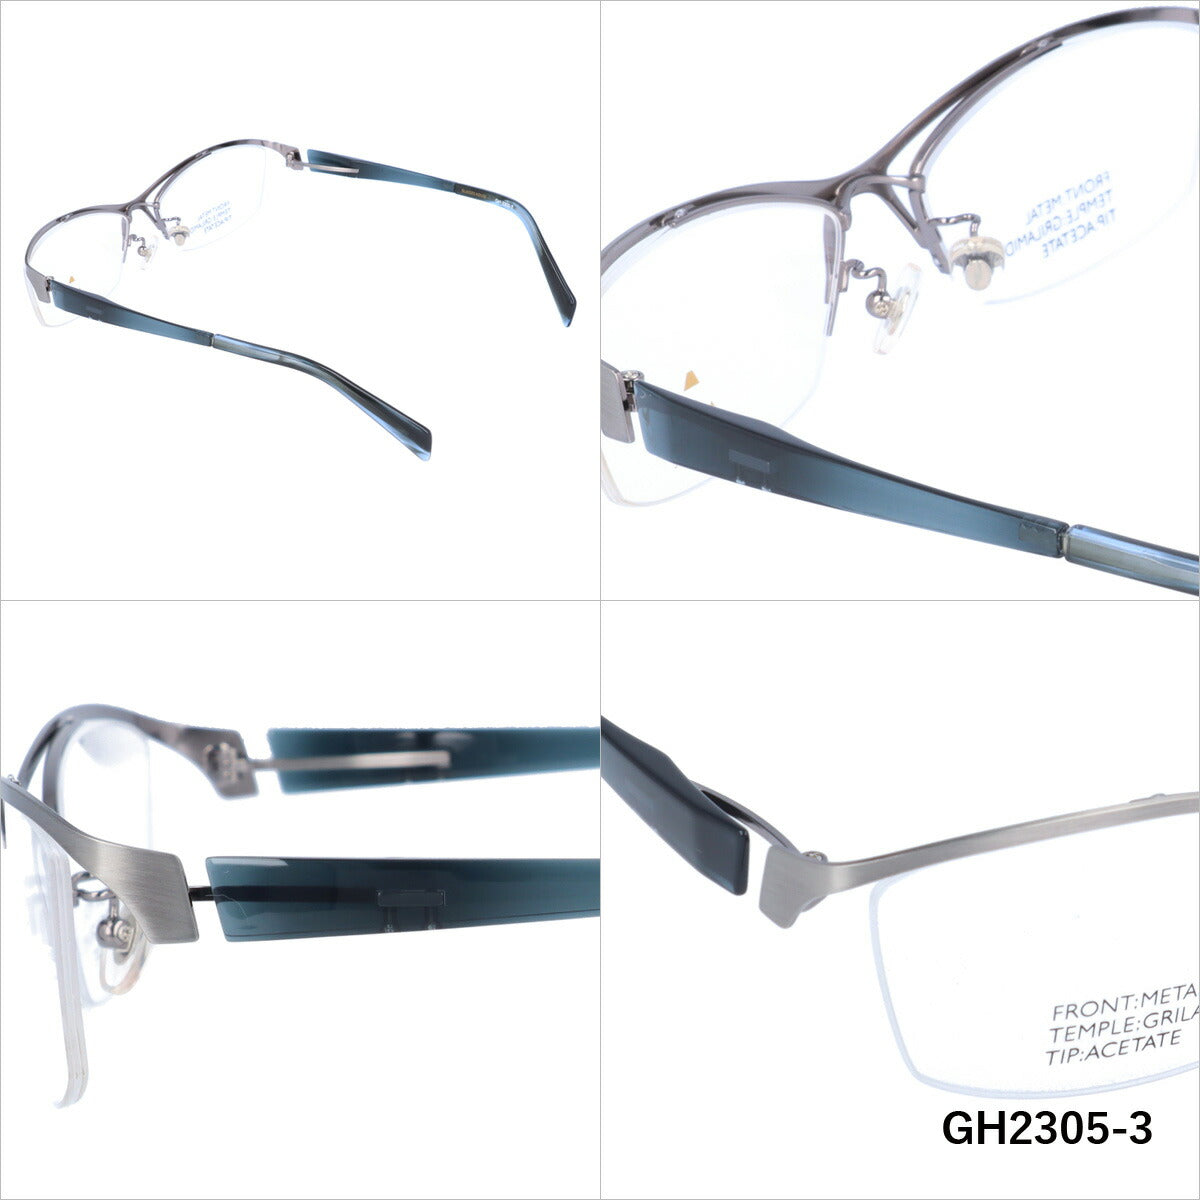 メガネ 眼鏡 おしゃれ GLASSES HOUSE グラスハウス GH 2305 全4色 56サイズ スクエア型 メンズ レディース UVカット 紫外線 ブランド サングラス 伊達 ダテラッピング無料